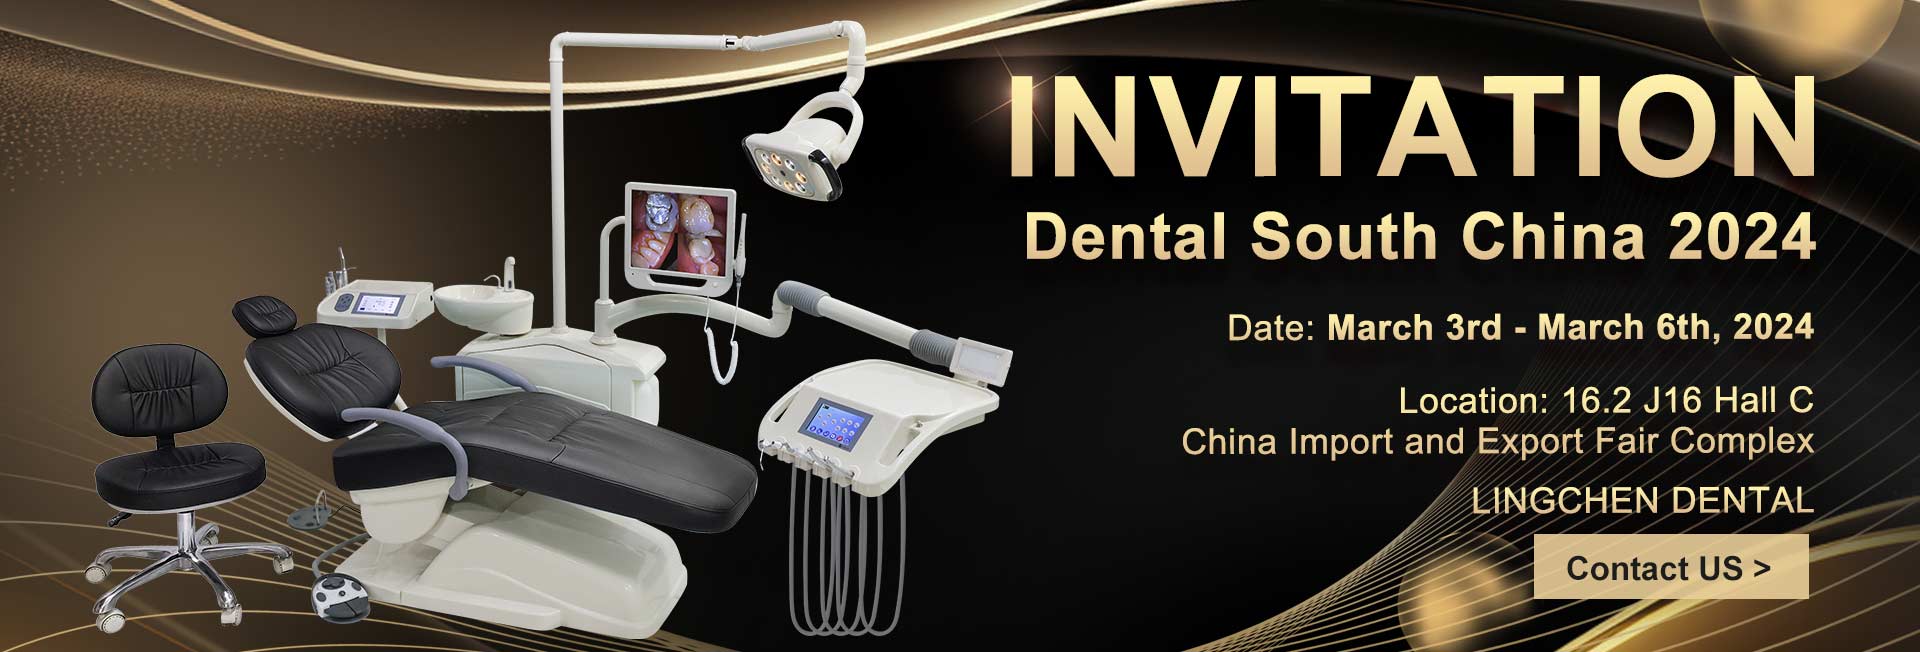 Dental Cənubi Çin Dəvət 2024